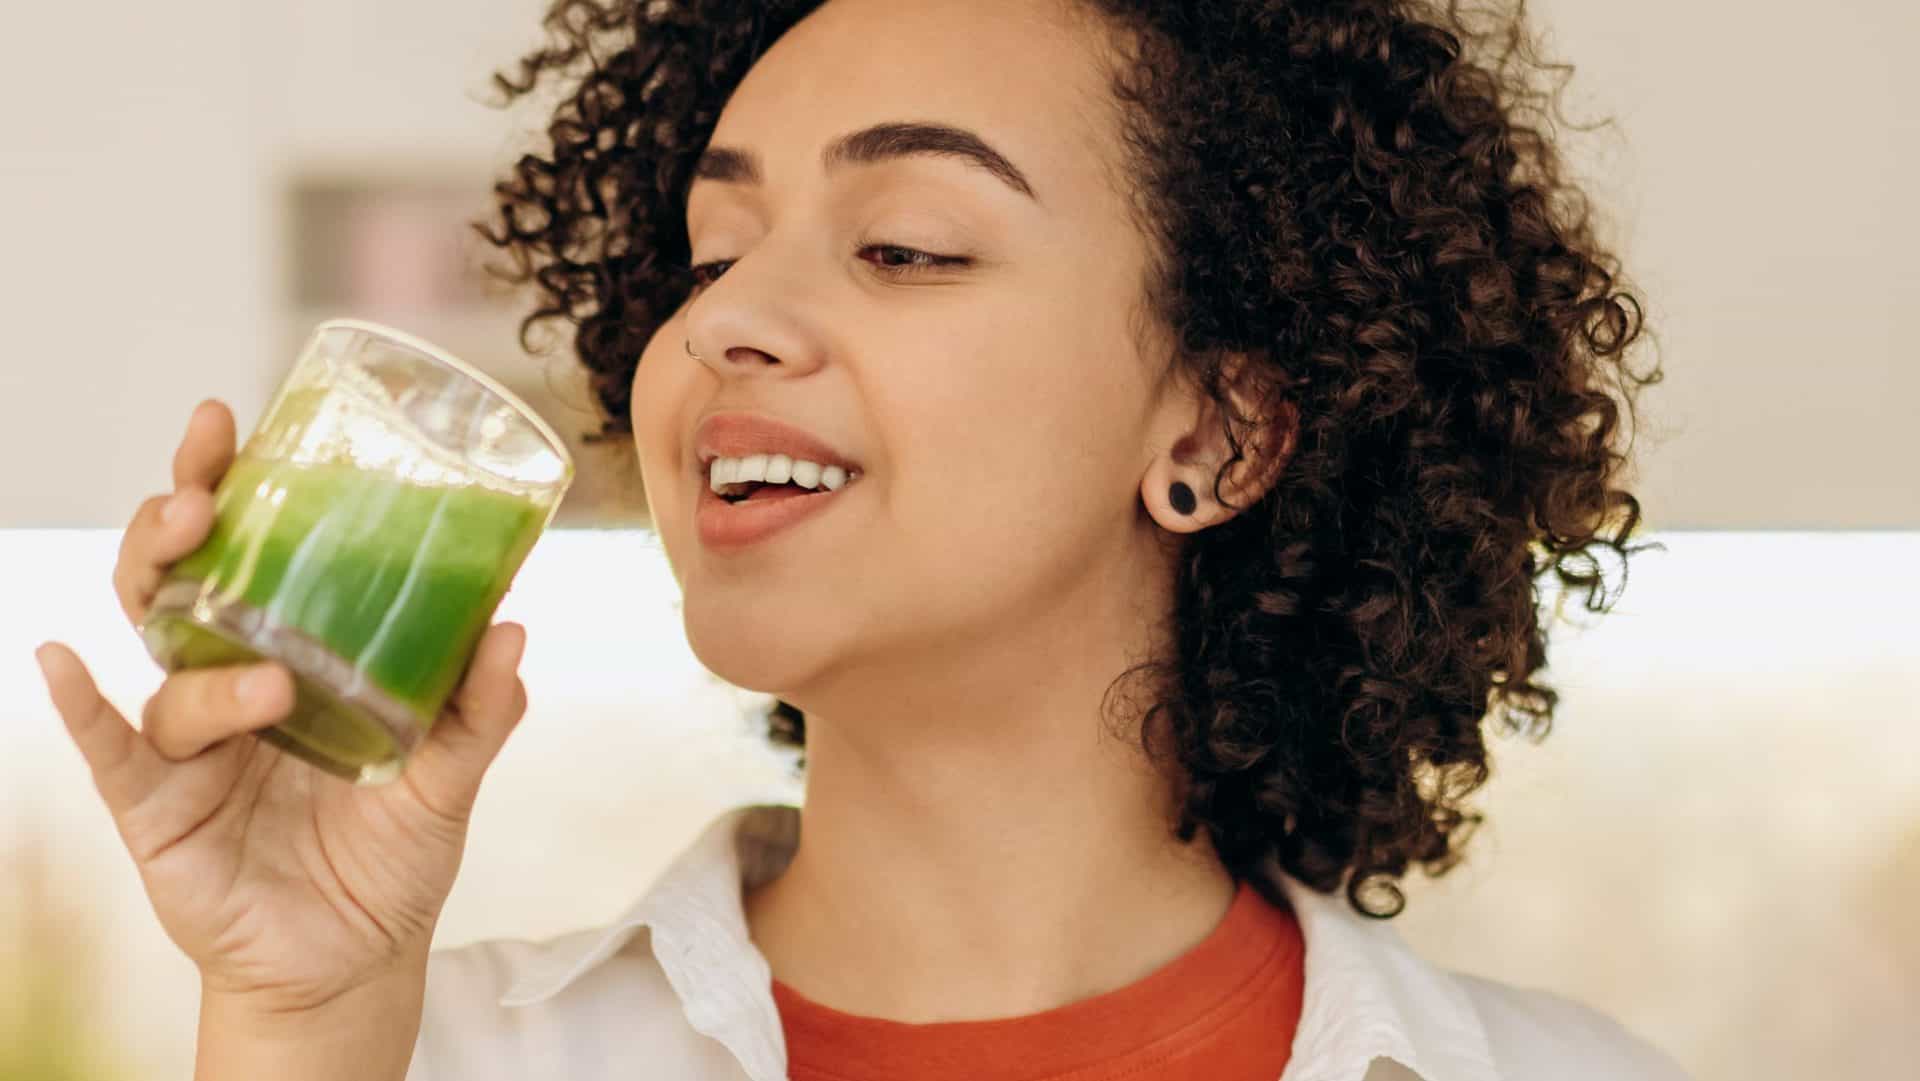 vrouw drinkt groen sap